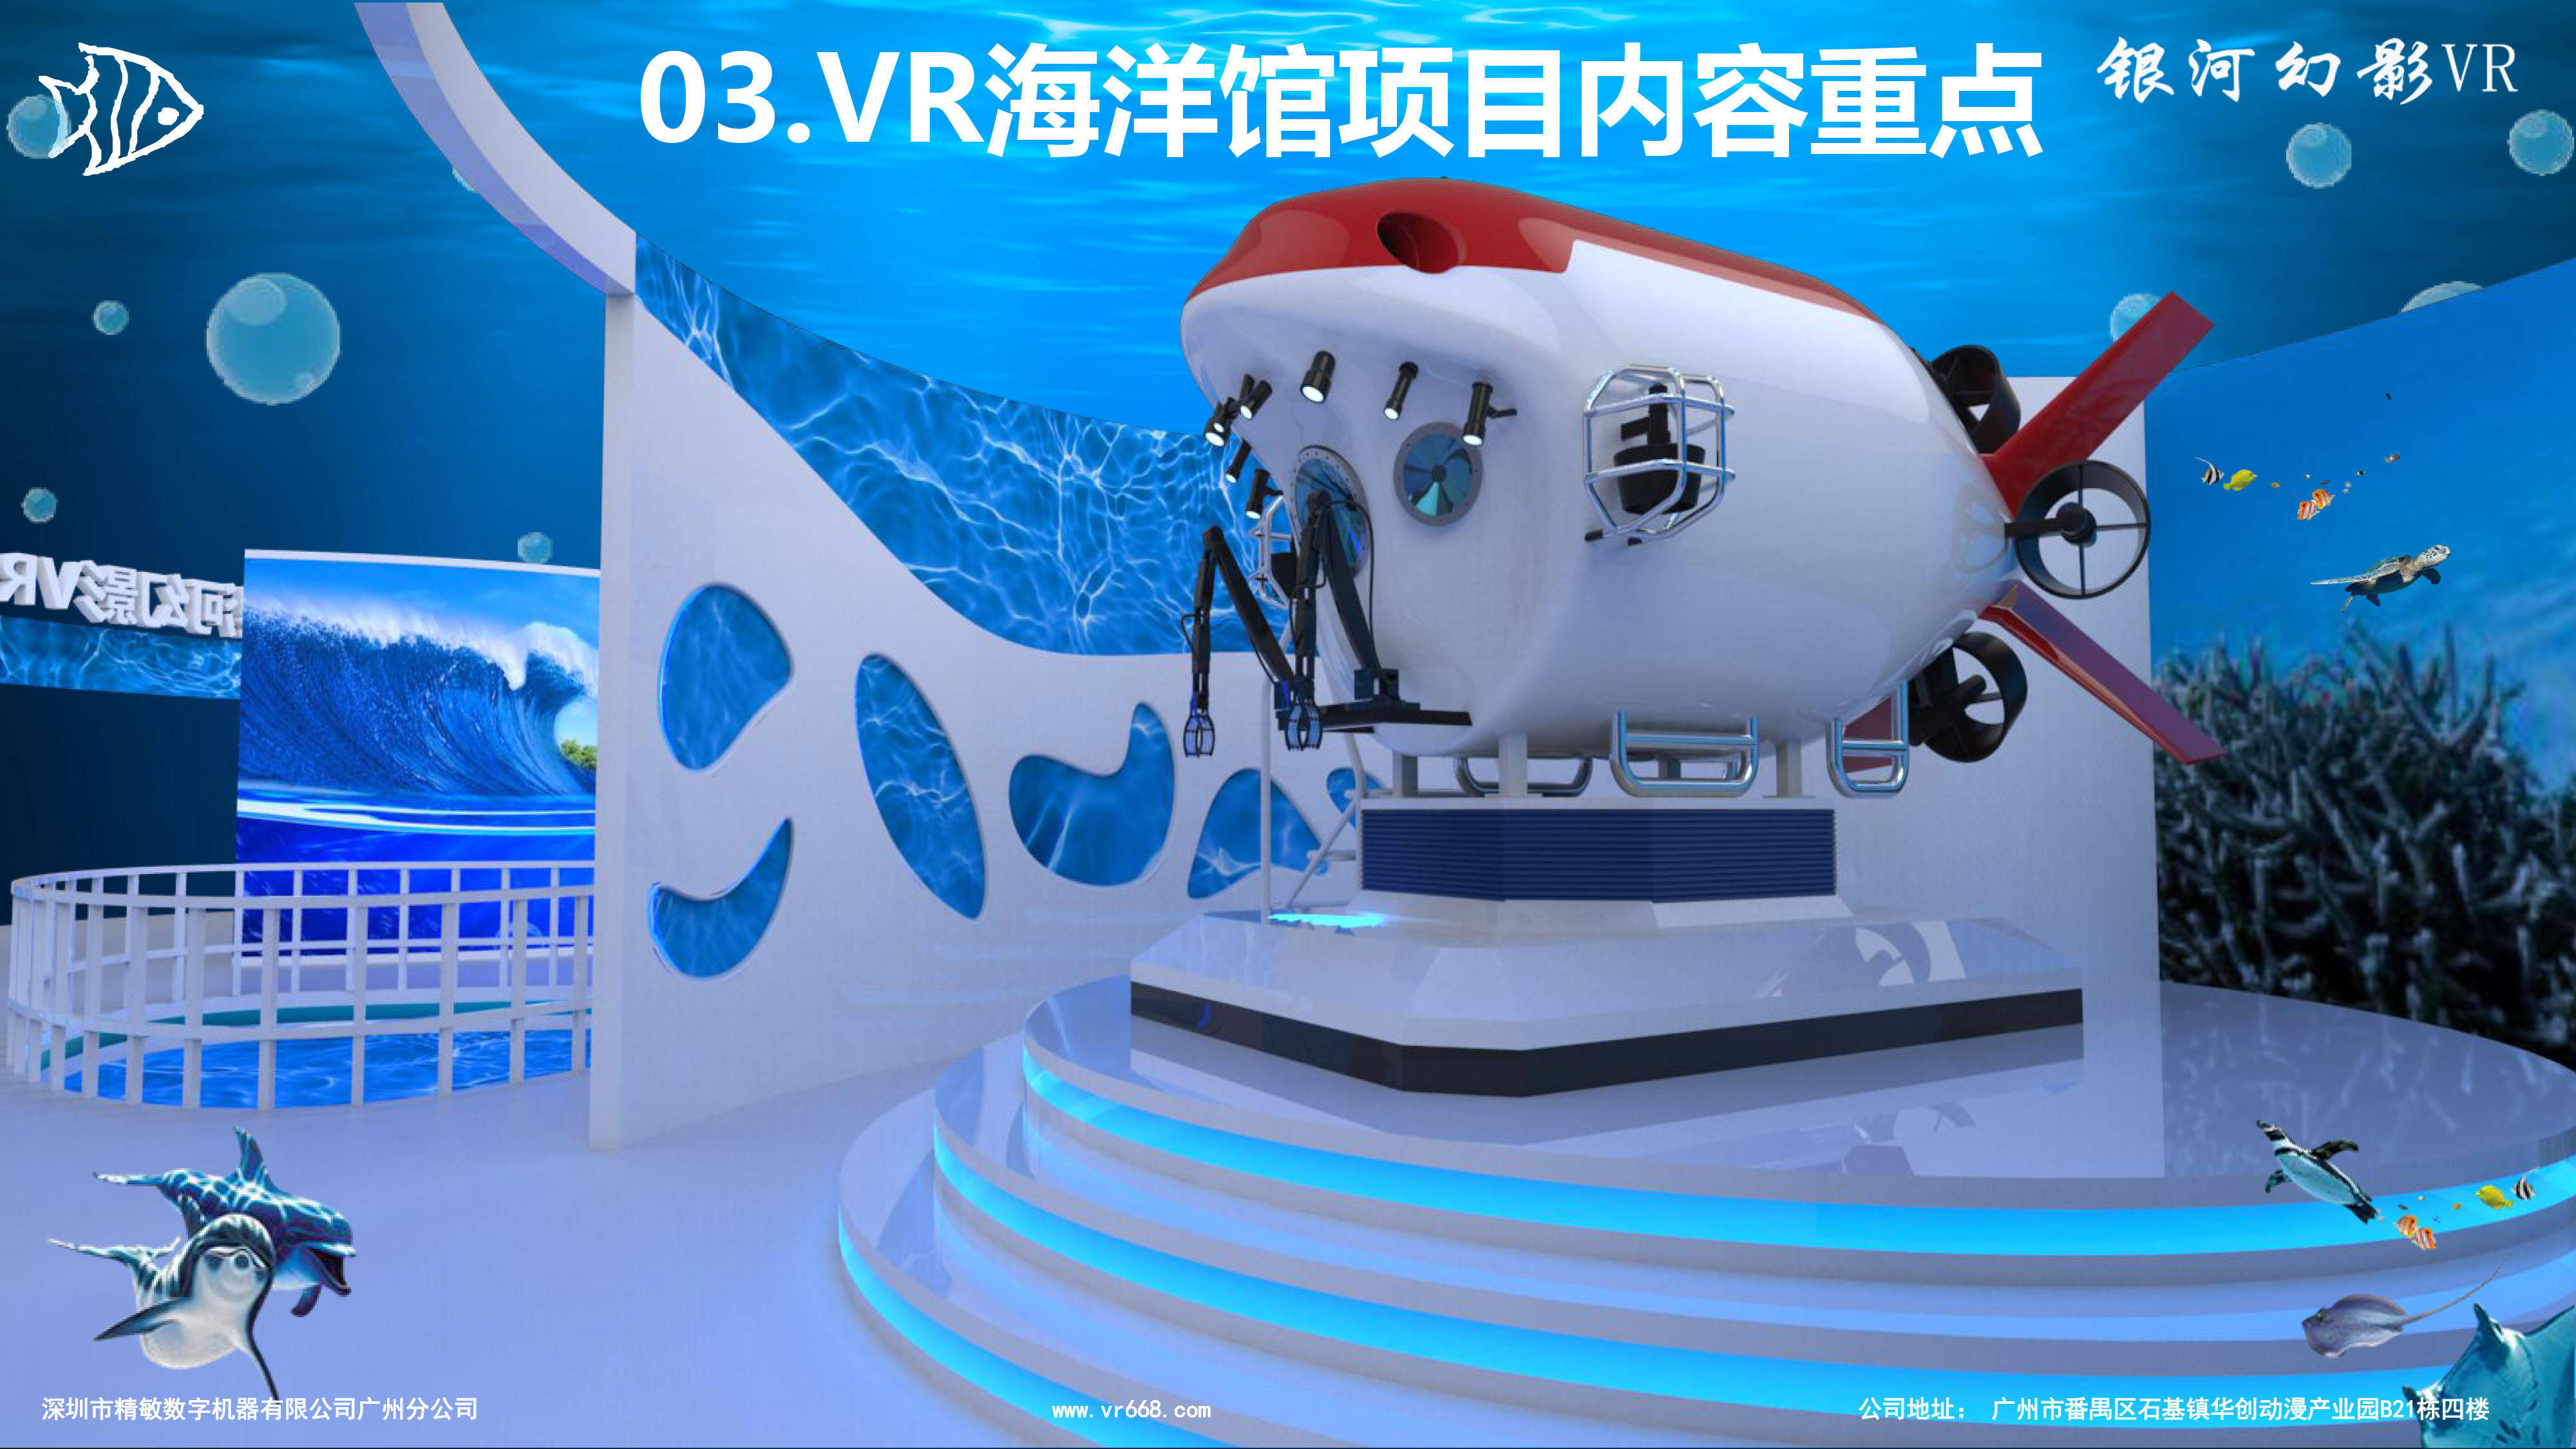 当VR走进海洋世界——海洋VR体验馆新模式